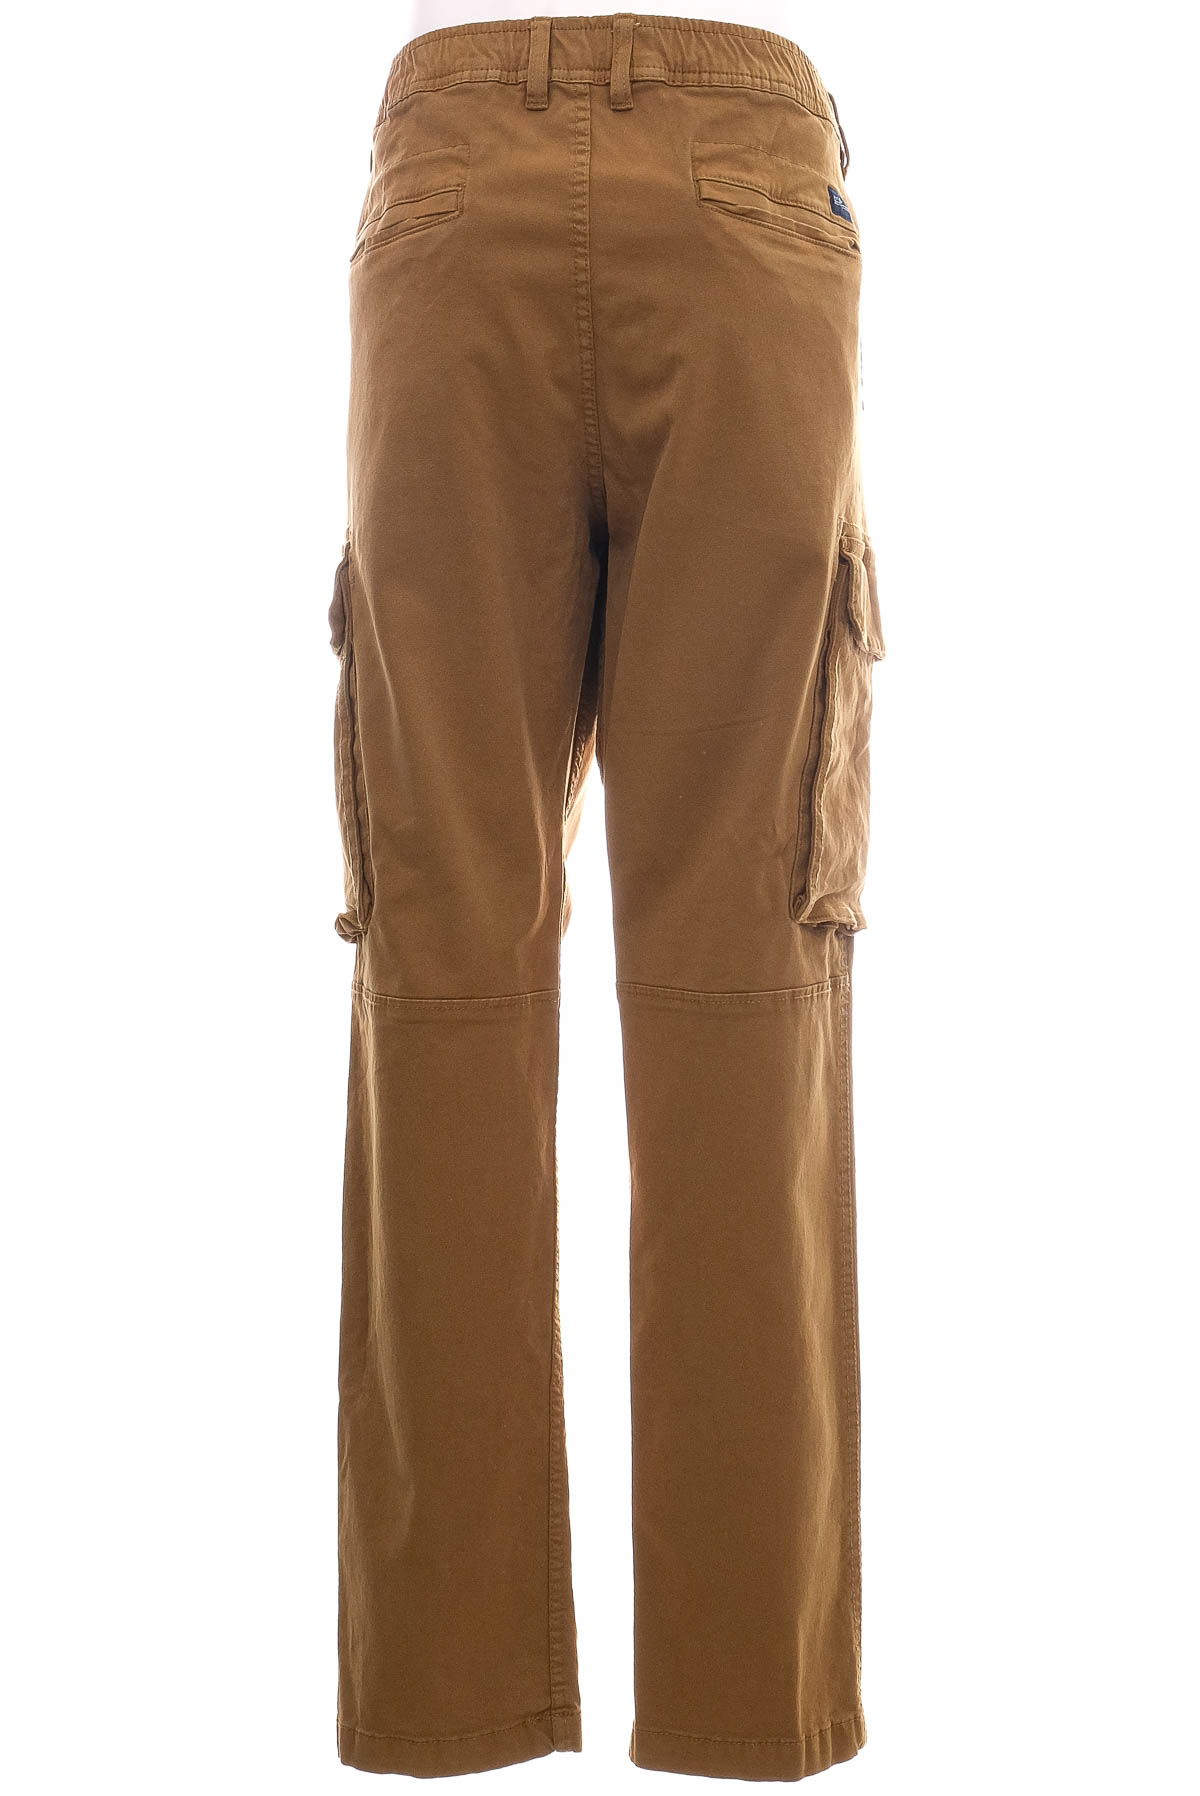 Men's trousers - C&A - 1